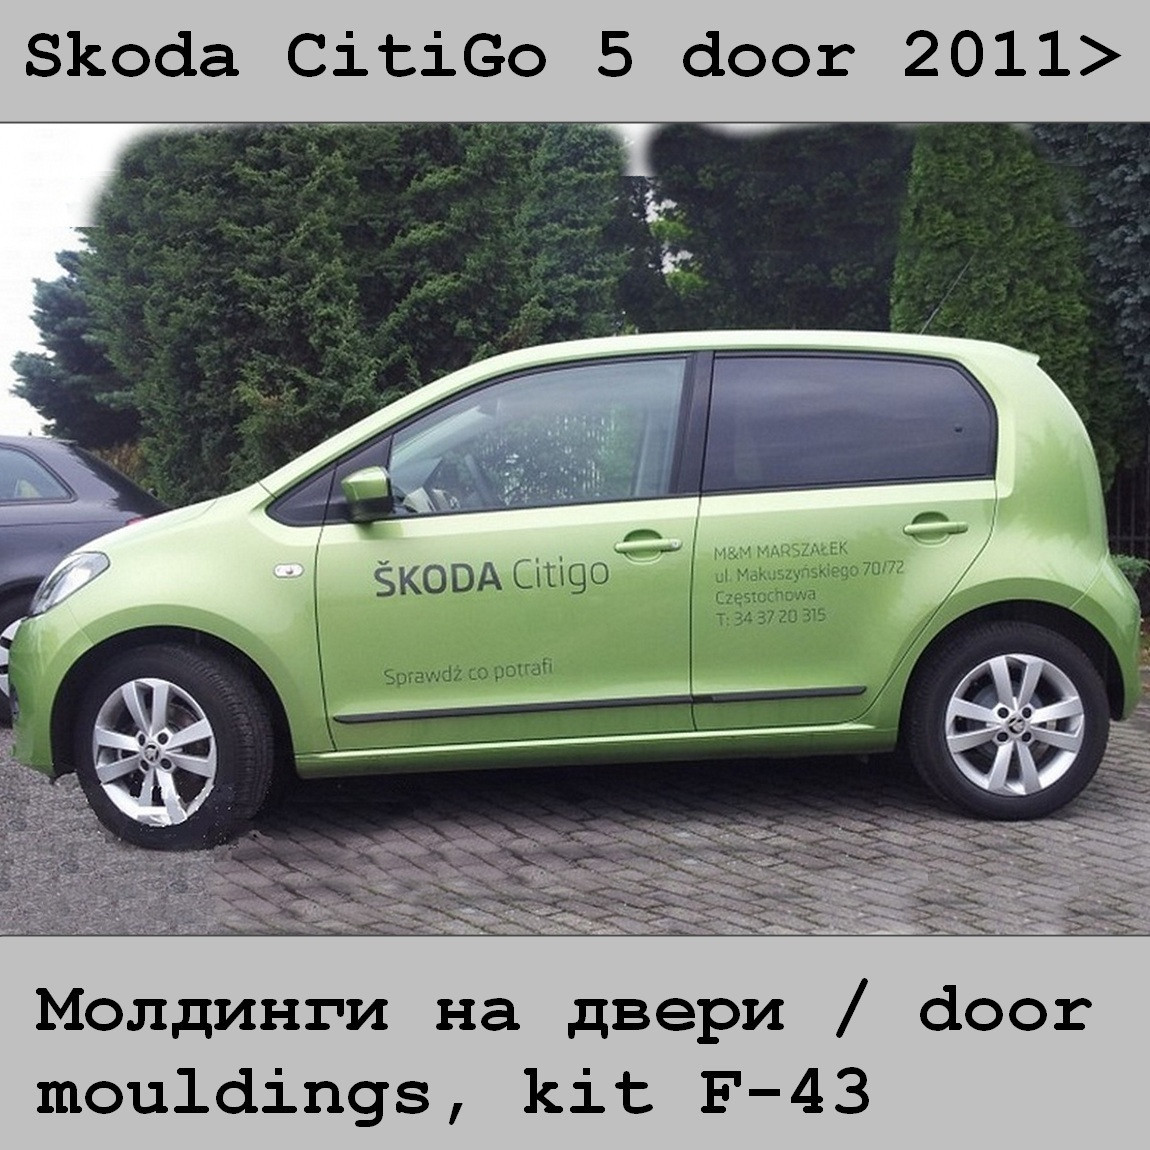 Молдинги на двері для Skoda CitiGo 5 door 2011+